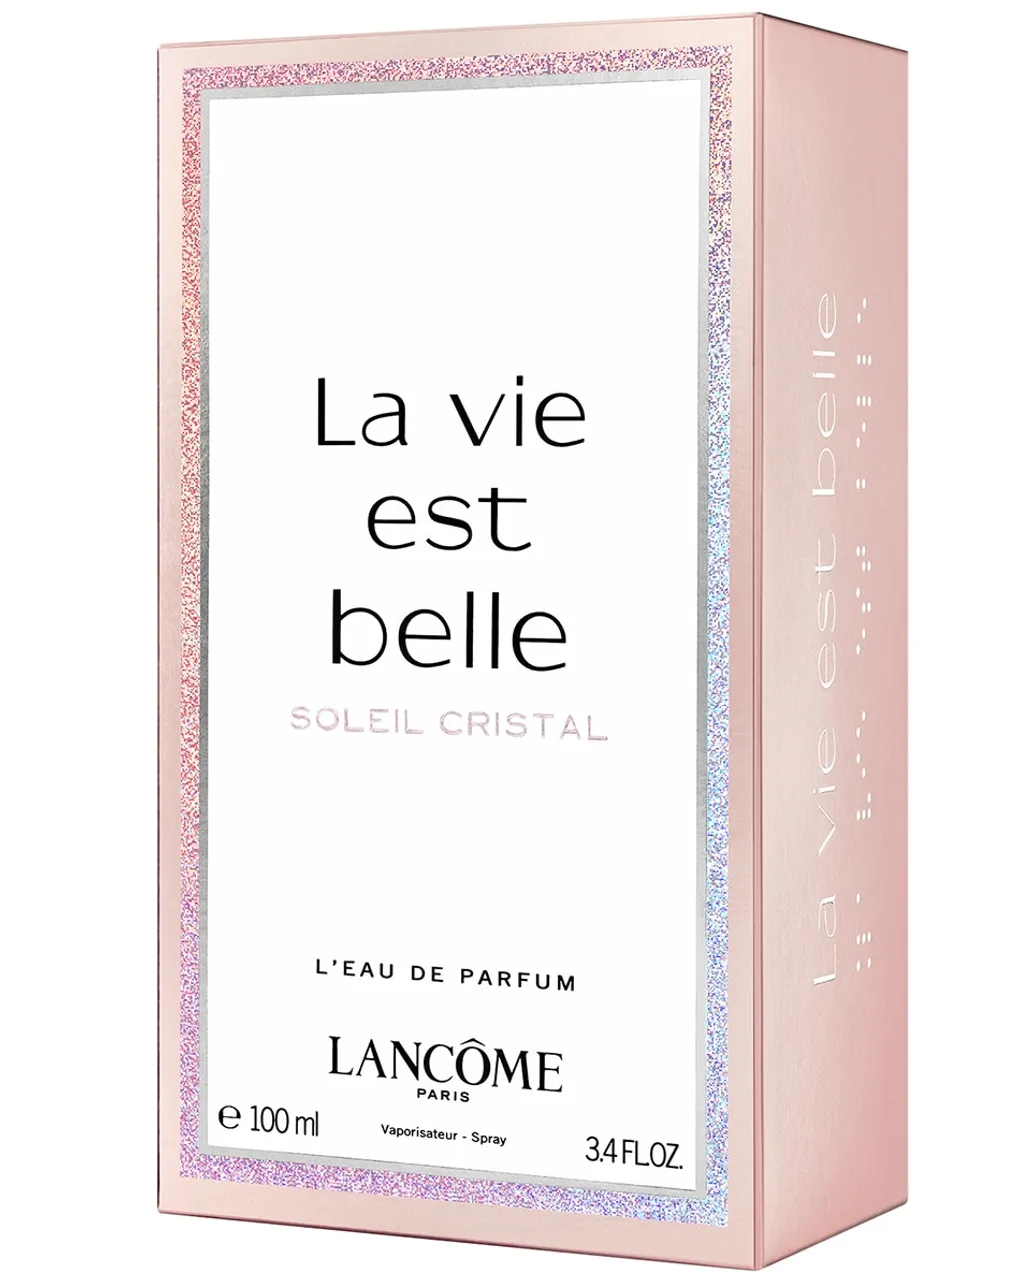 Lancôme La Vie Est Belle Soleil Cristal EAU DE PARFUM 100 ML